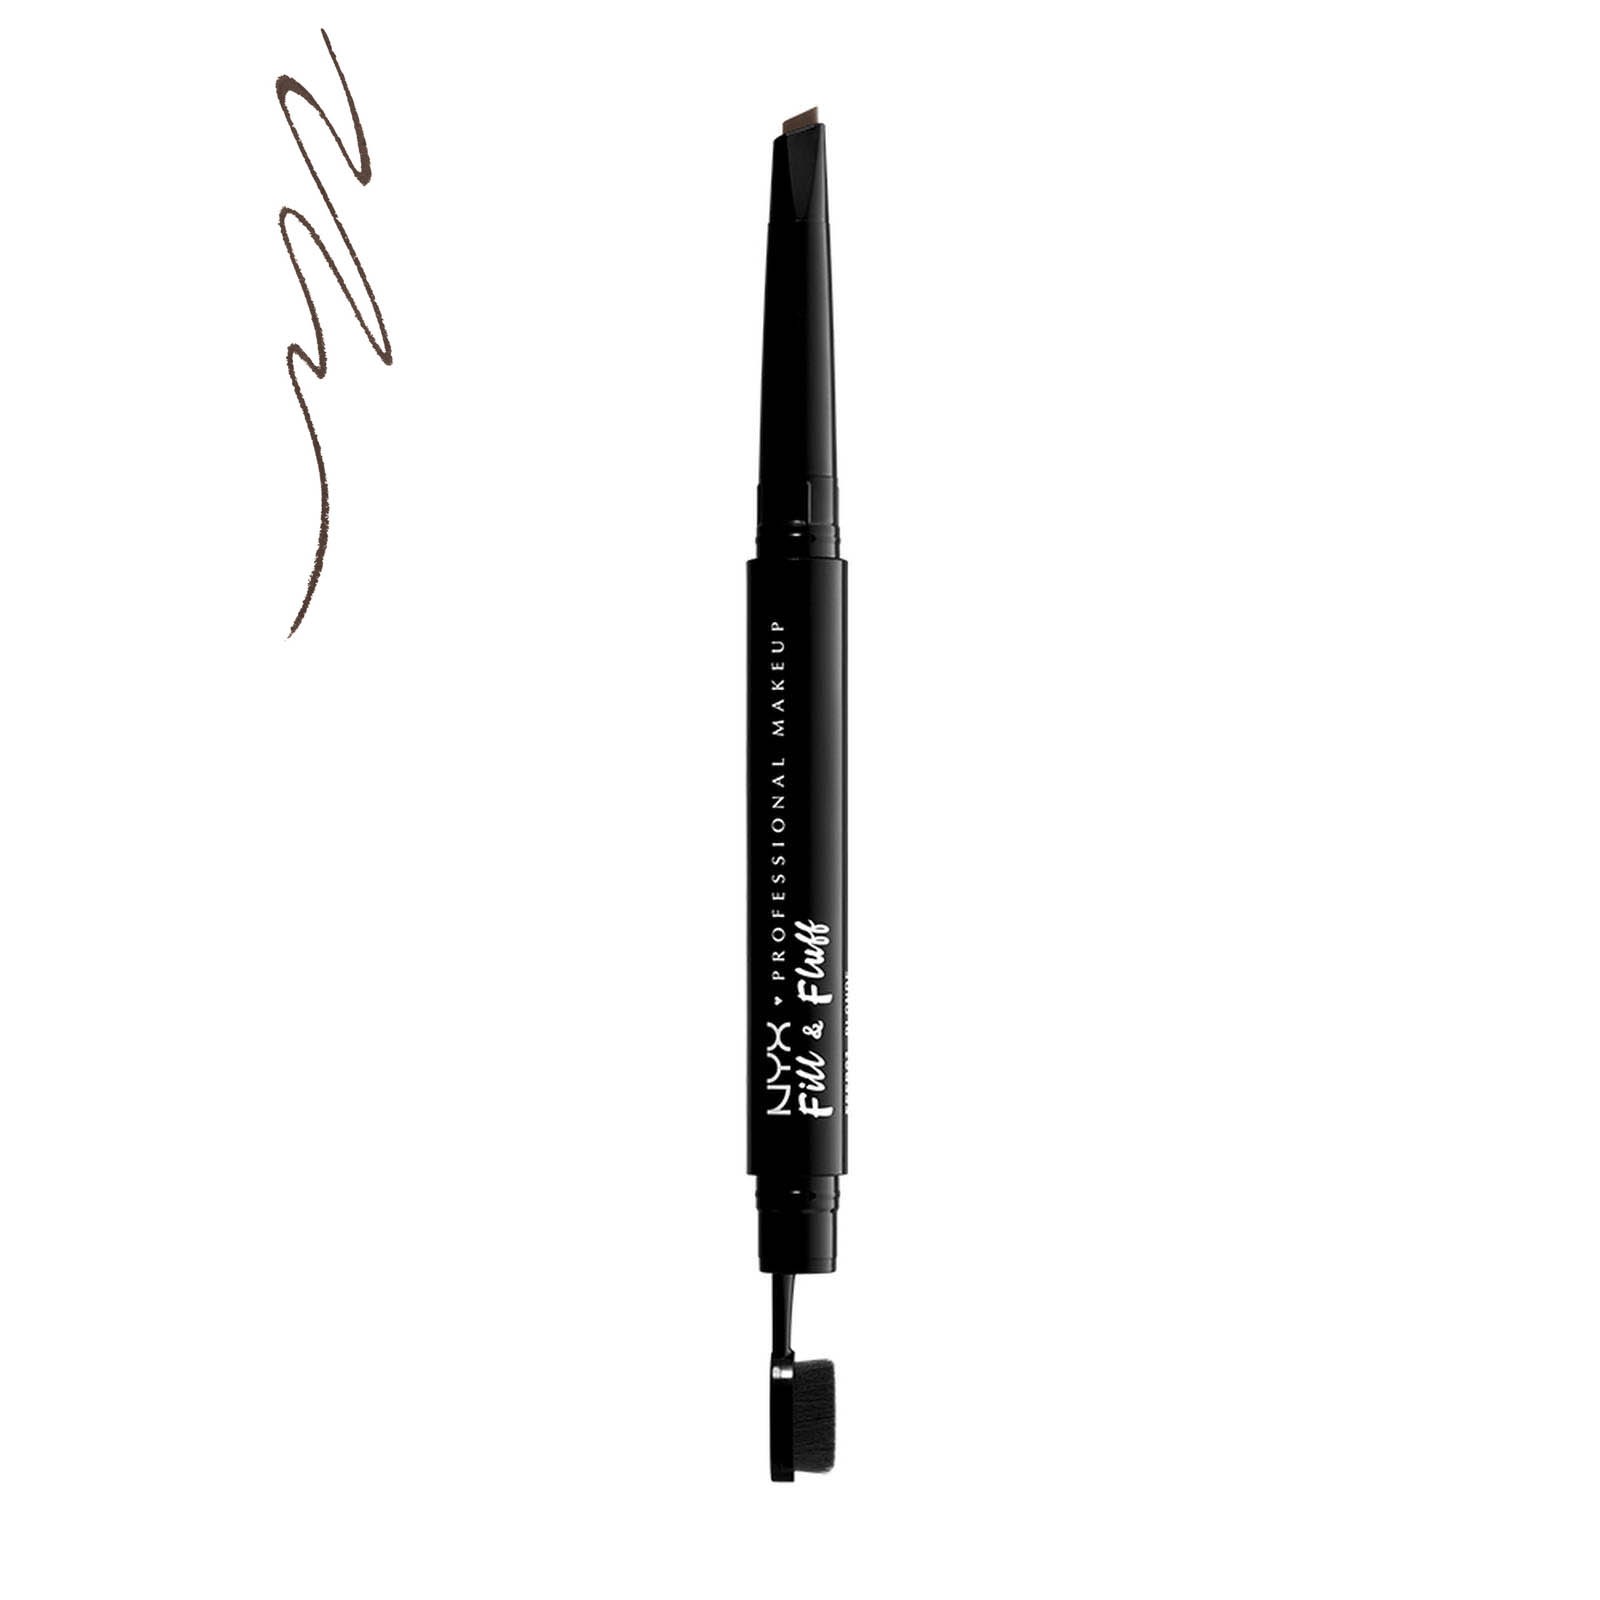 Augenbrauen-Stift - Fill & Fluff Eyebrow Pomade Pencil